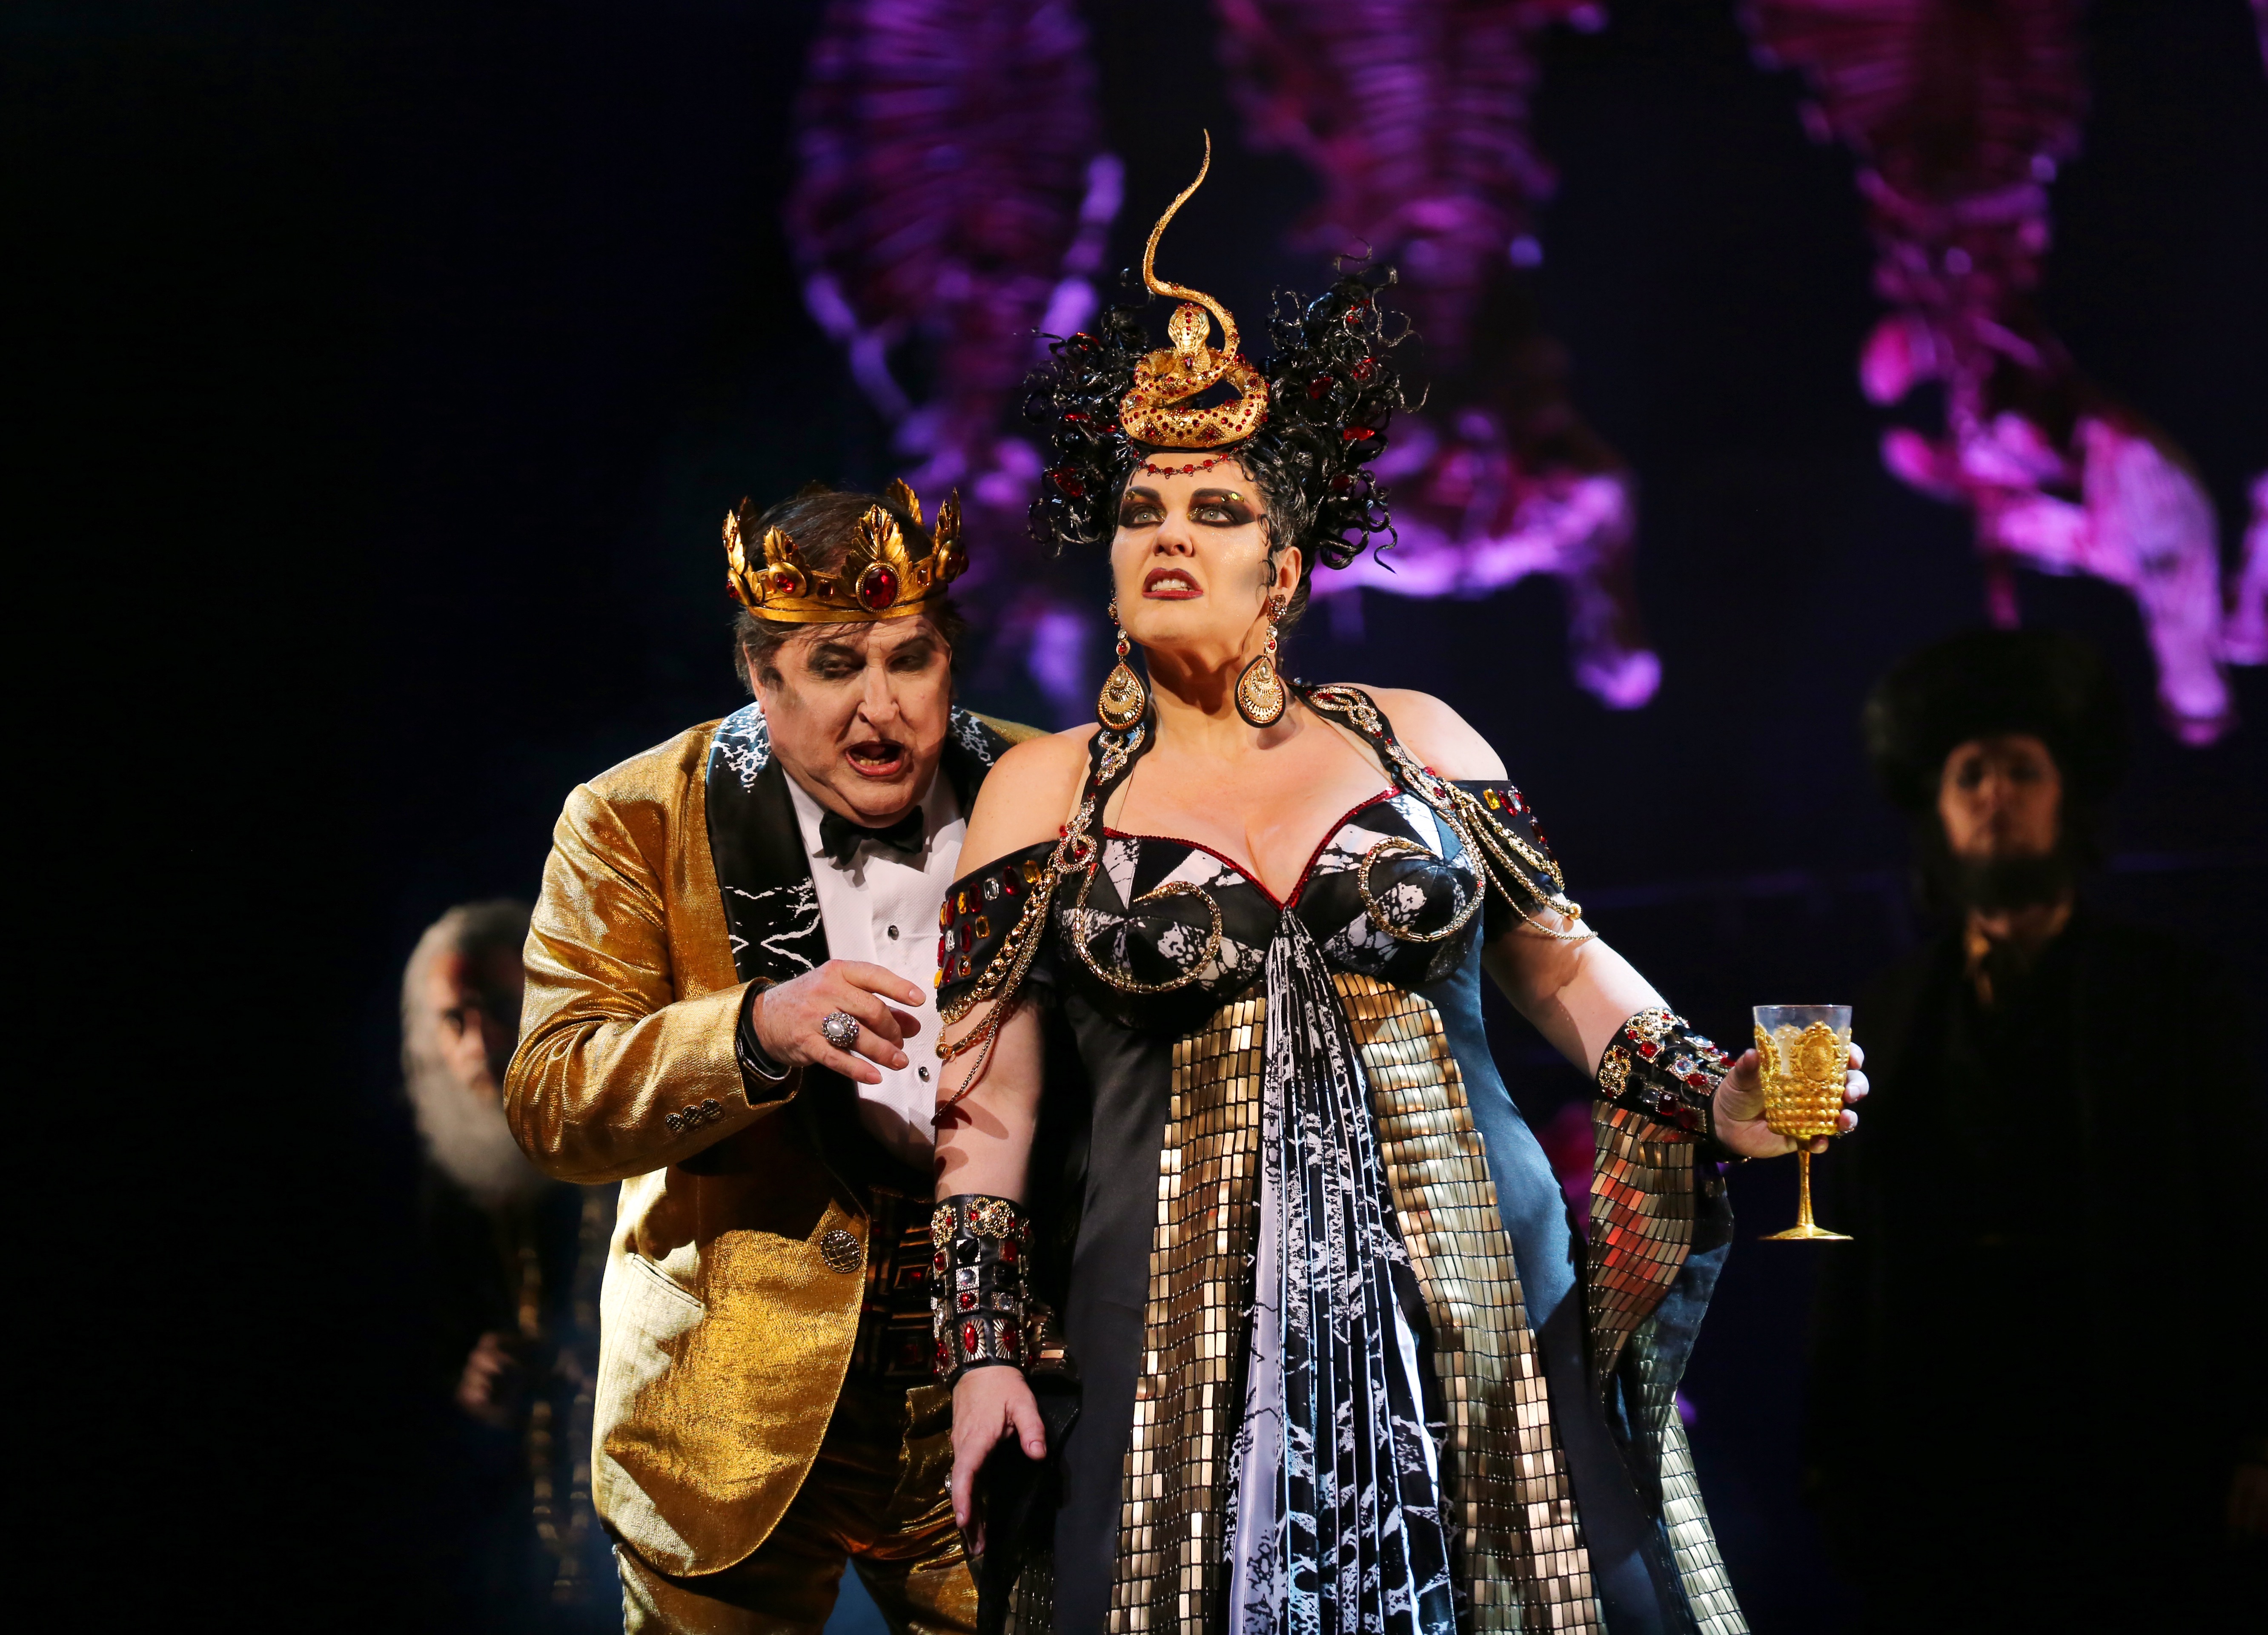 Herodias (Salome) for Opera Australia